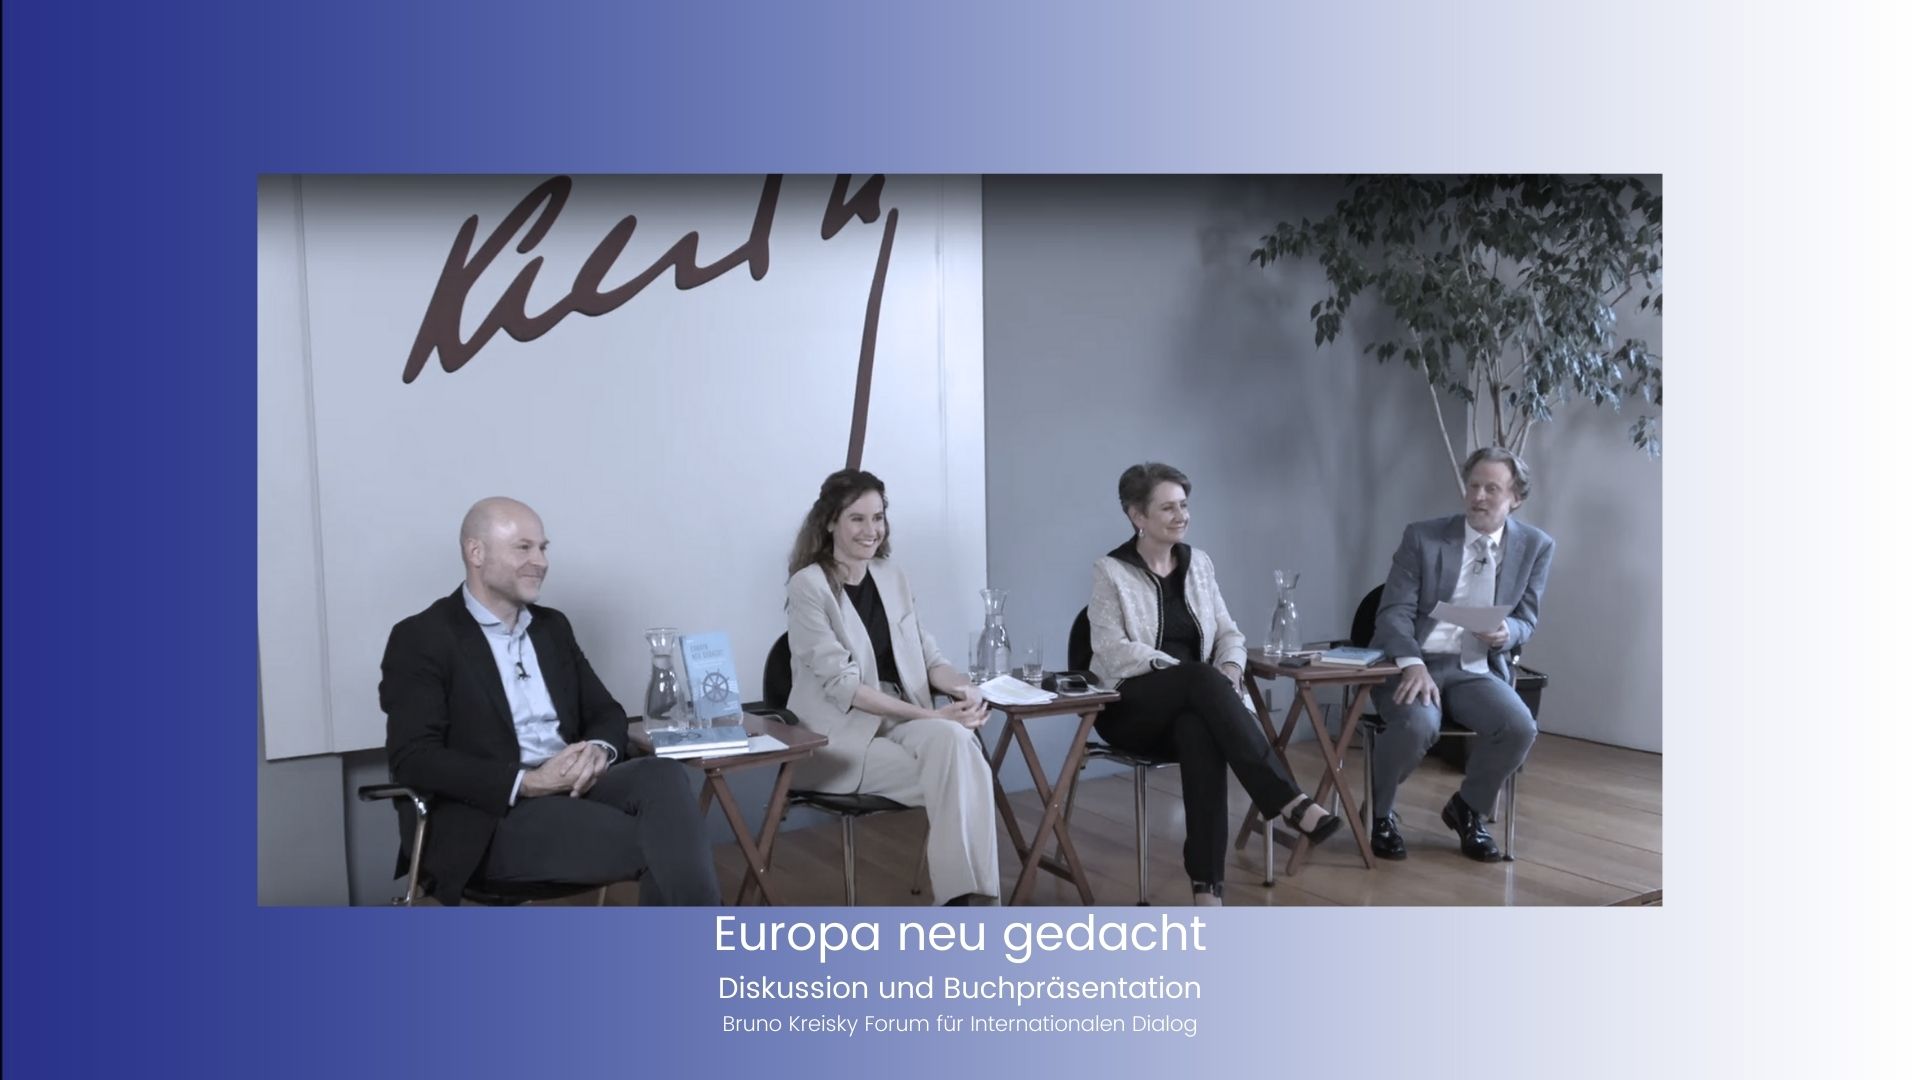 Thumbnail zur Buchpräsentation und Diskussion "Europa Neu gedacht" in Kooperation mit dem Bruno Kreisky Forum für Internationalen Dialog